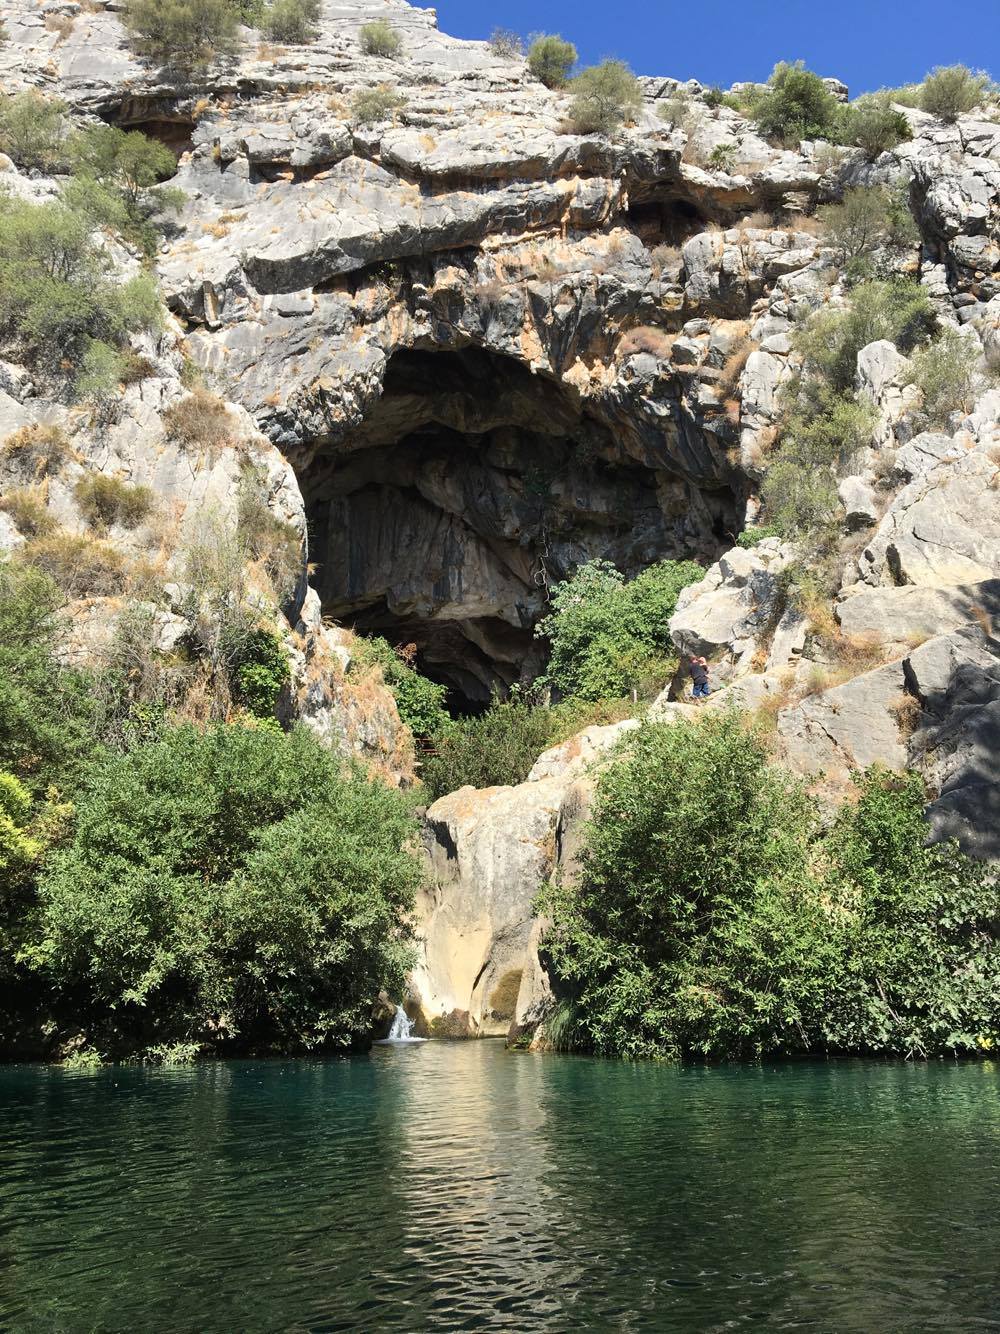 Cueva del Gato in Ronda, Spain